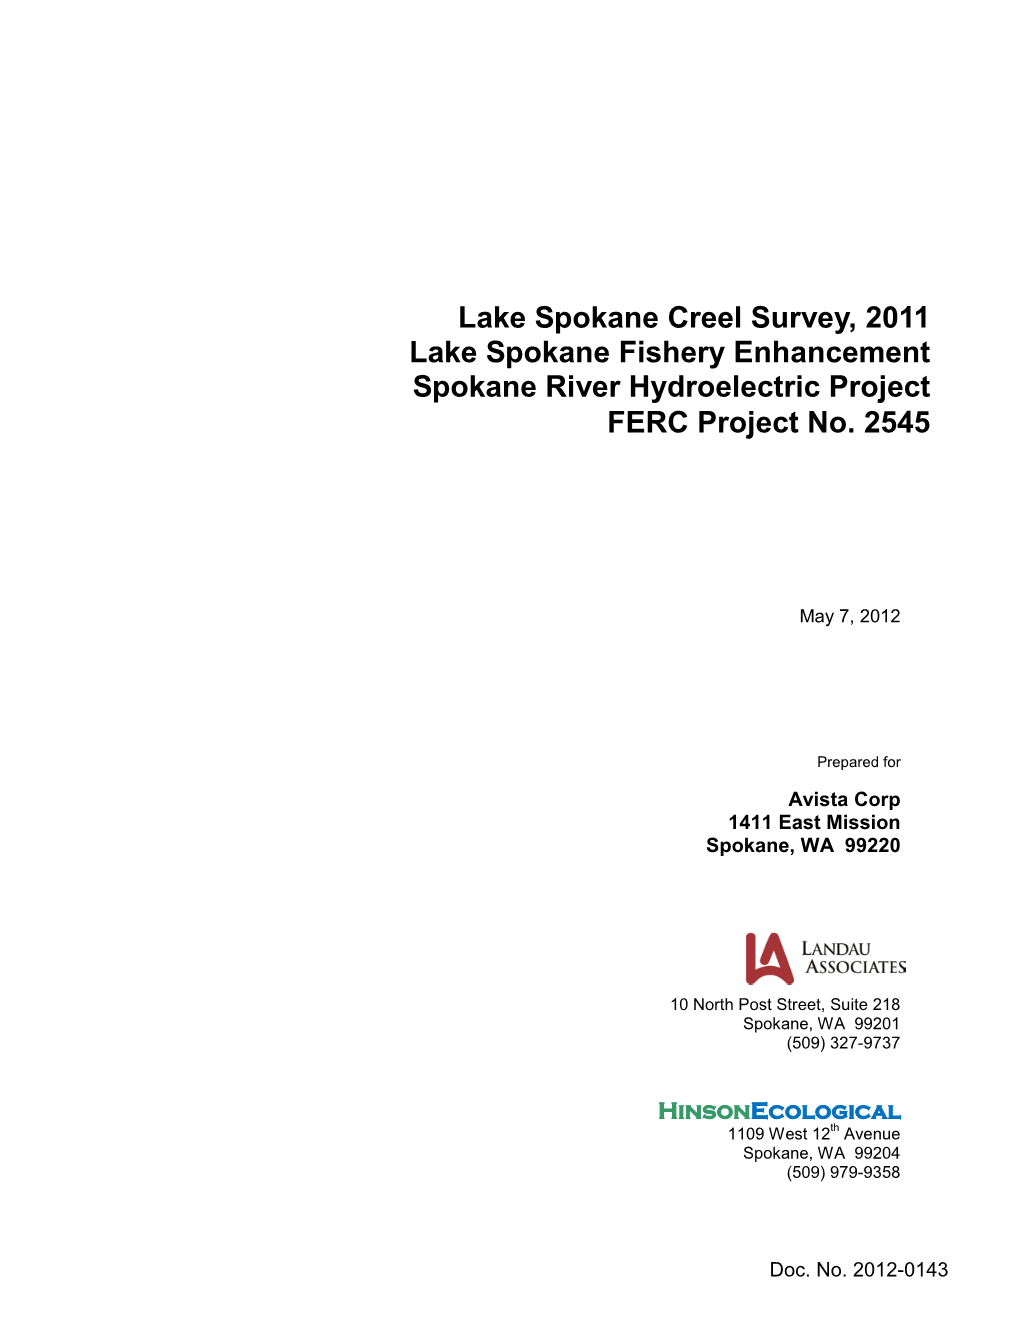 Lake Spokane Creel Survey 2011